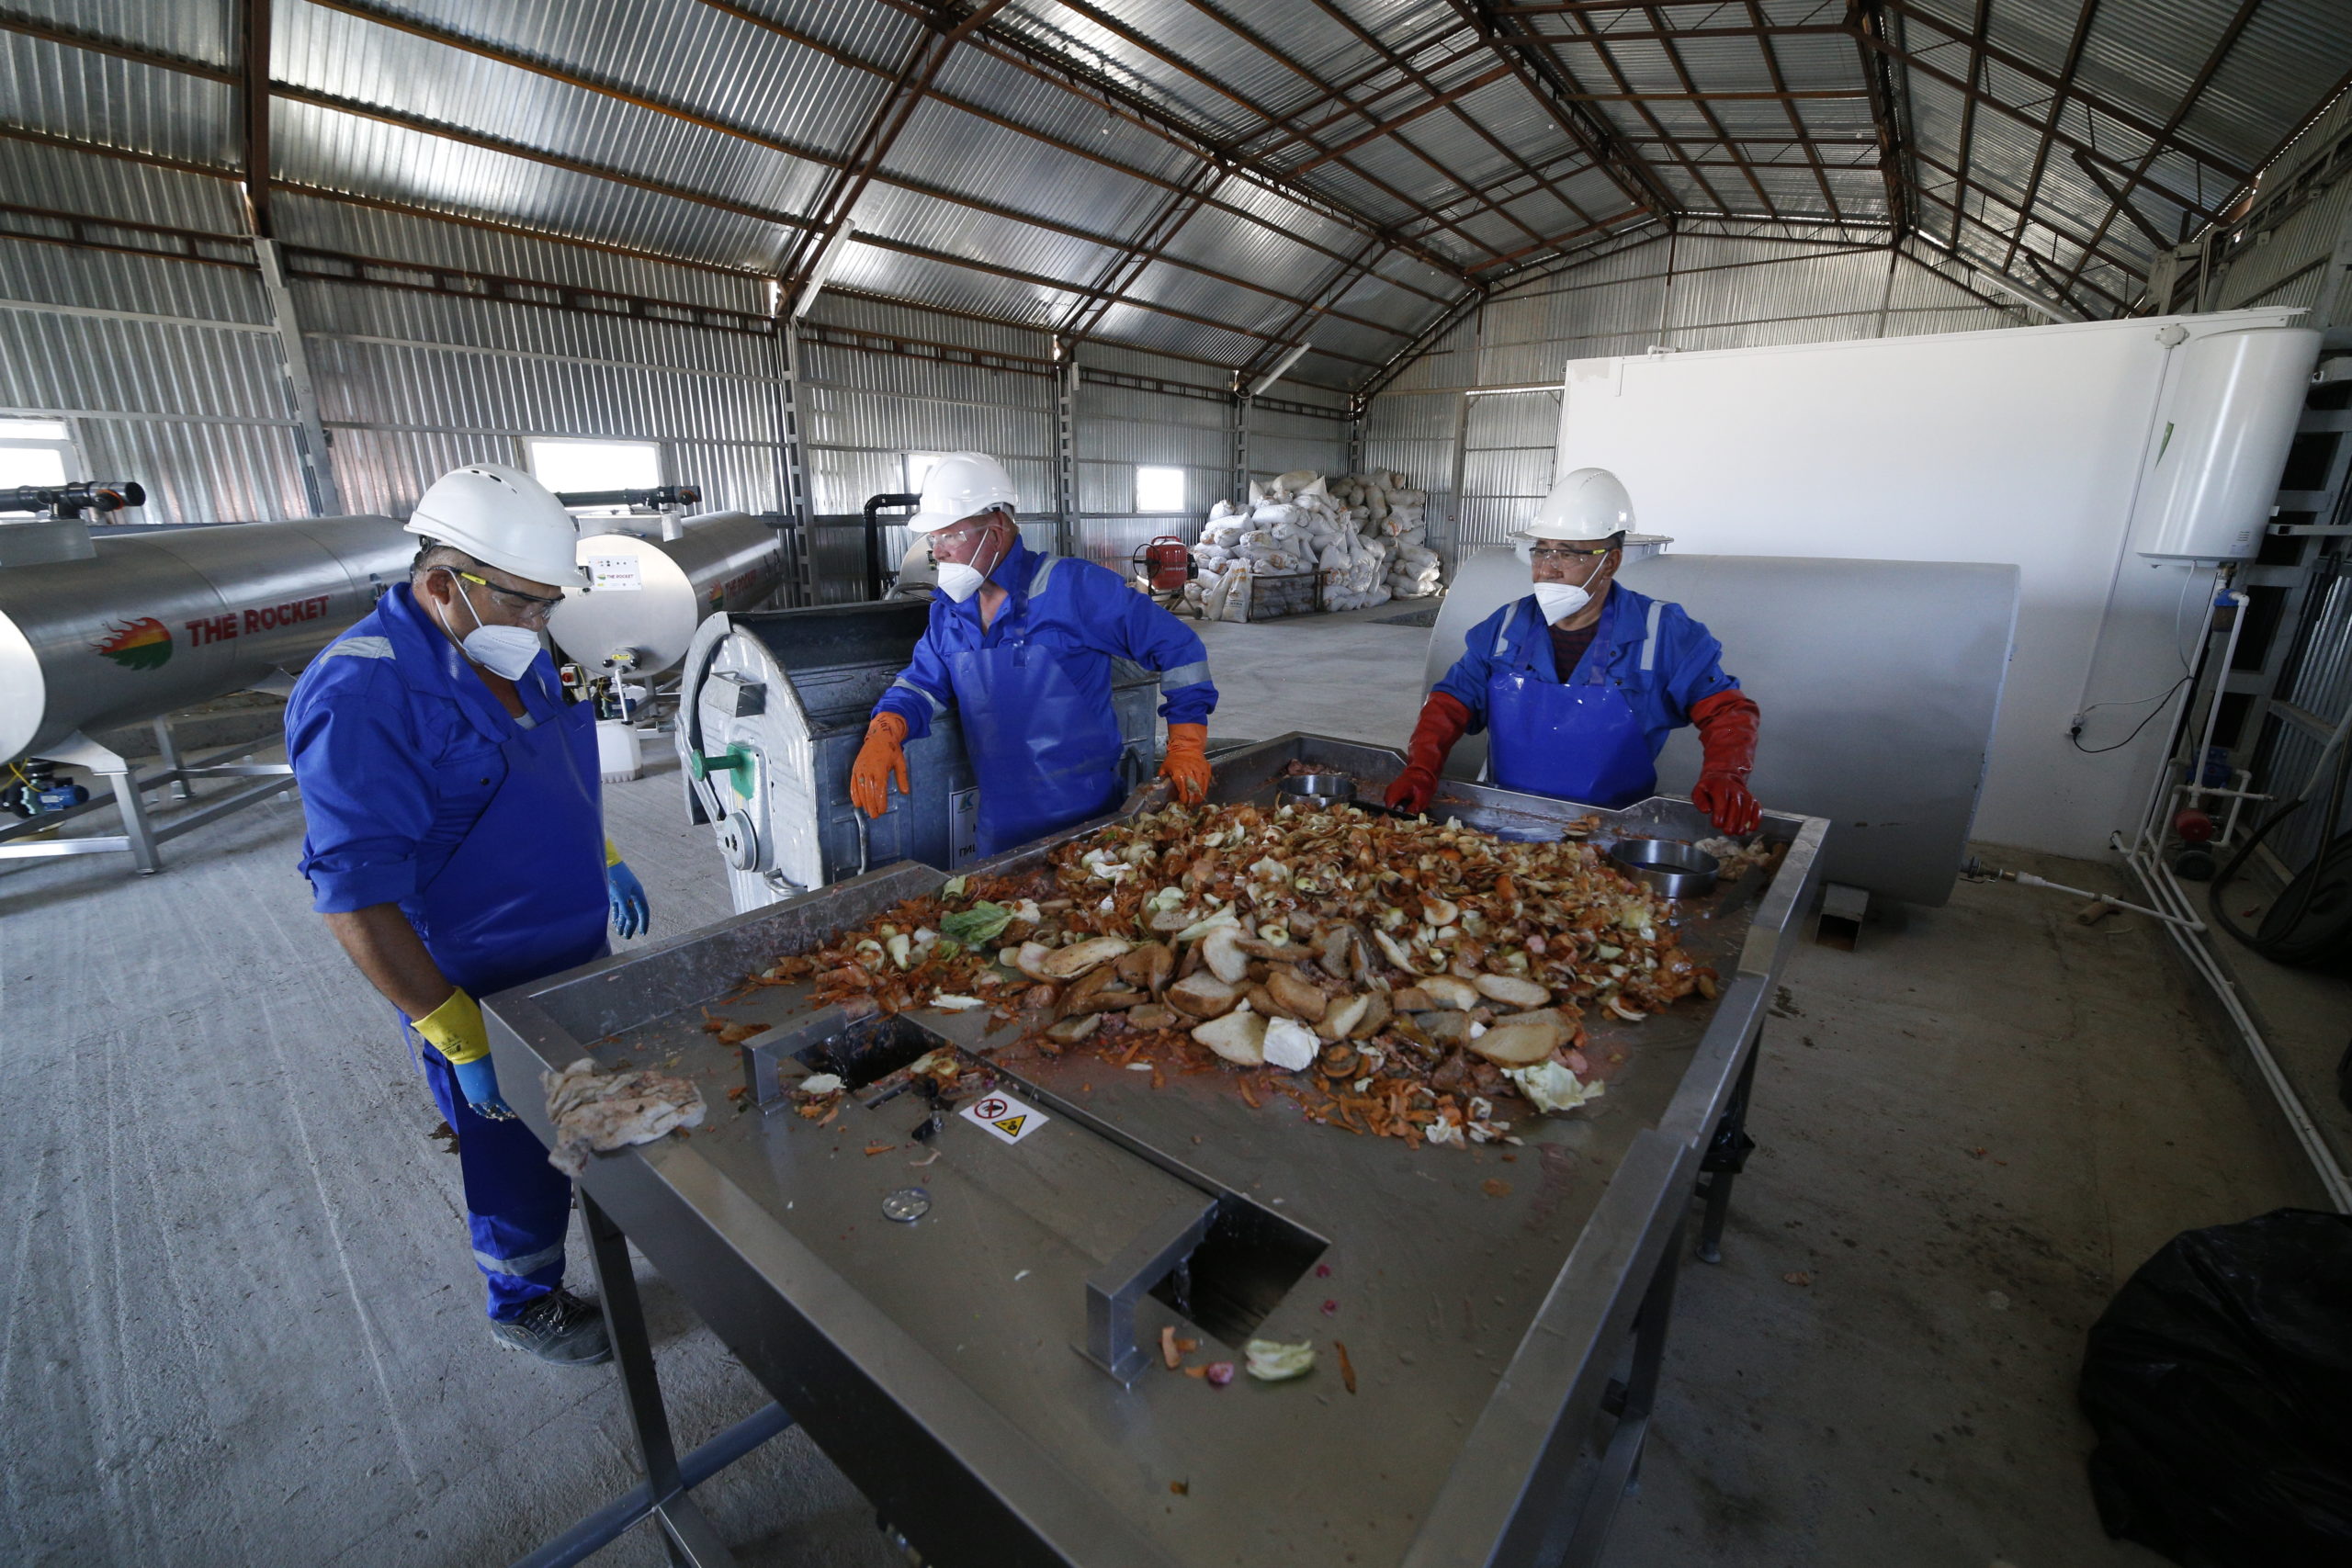 Oil field workers camp food waste dewatering